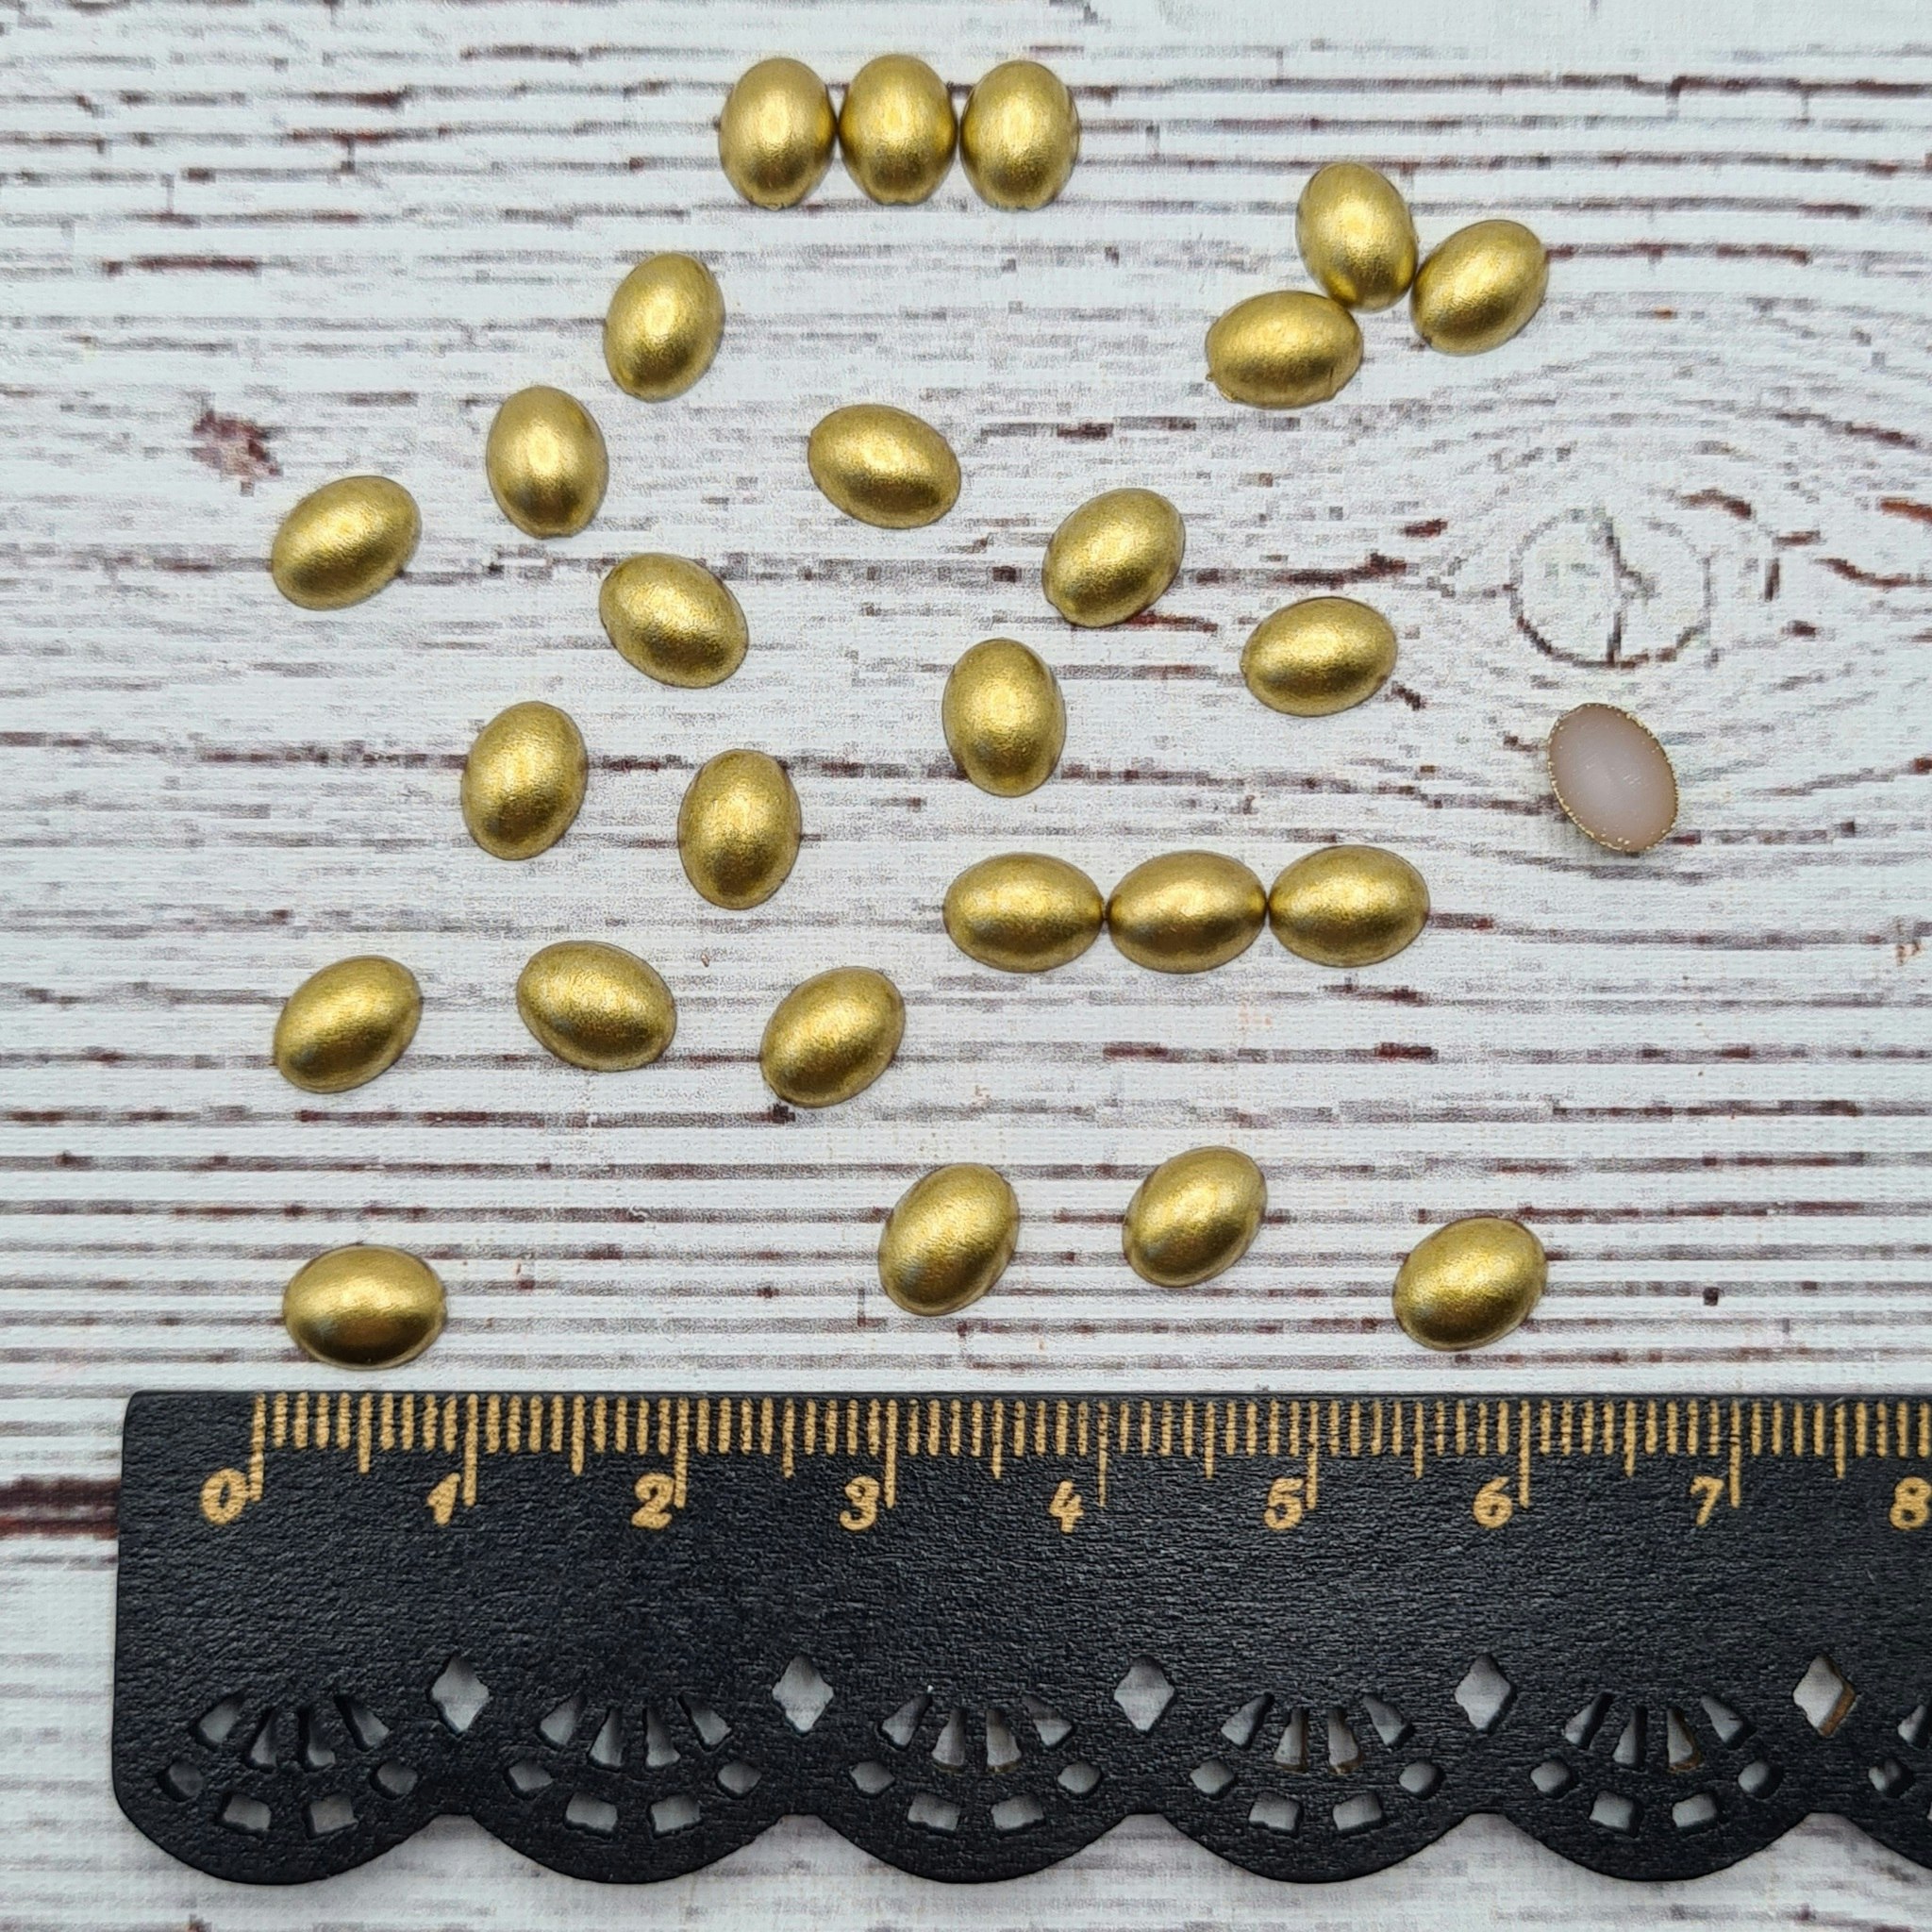 Oval halv pärla, Guld, 0,8 cm. 100st.